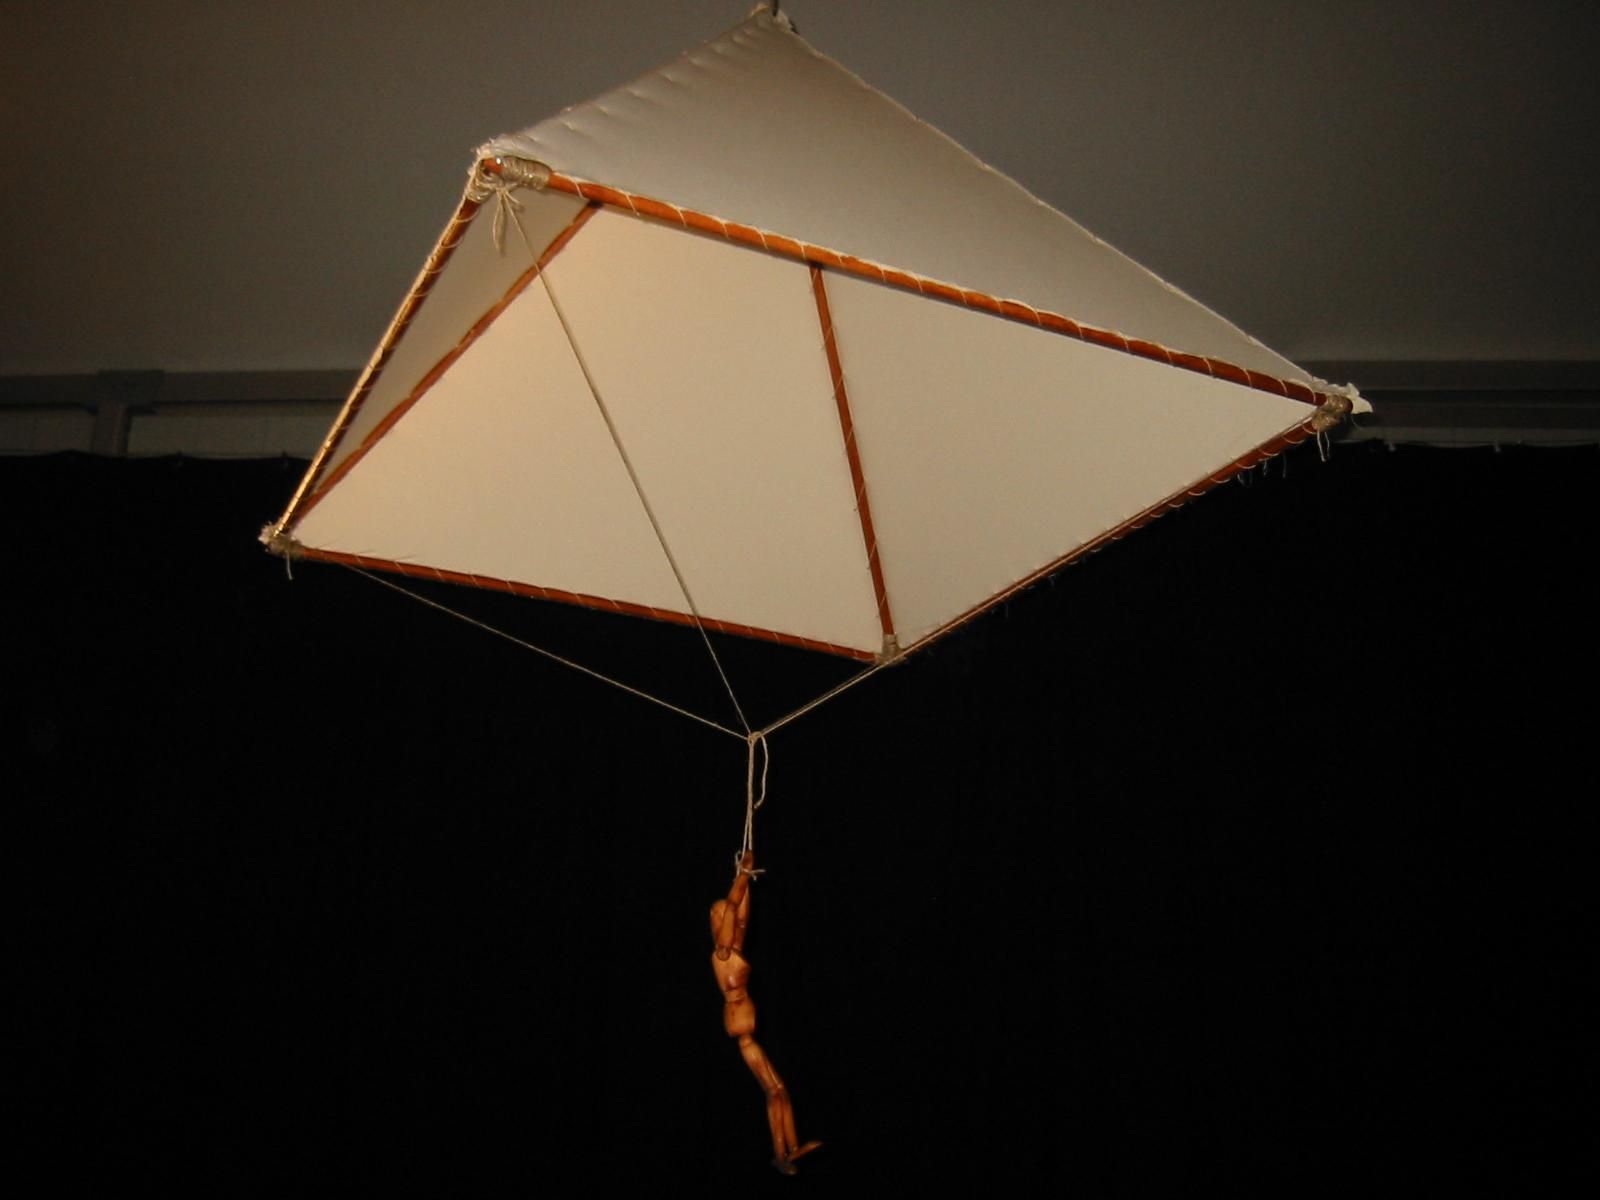 The parachute was invented by Leonardo da Vinci in 1515